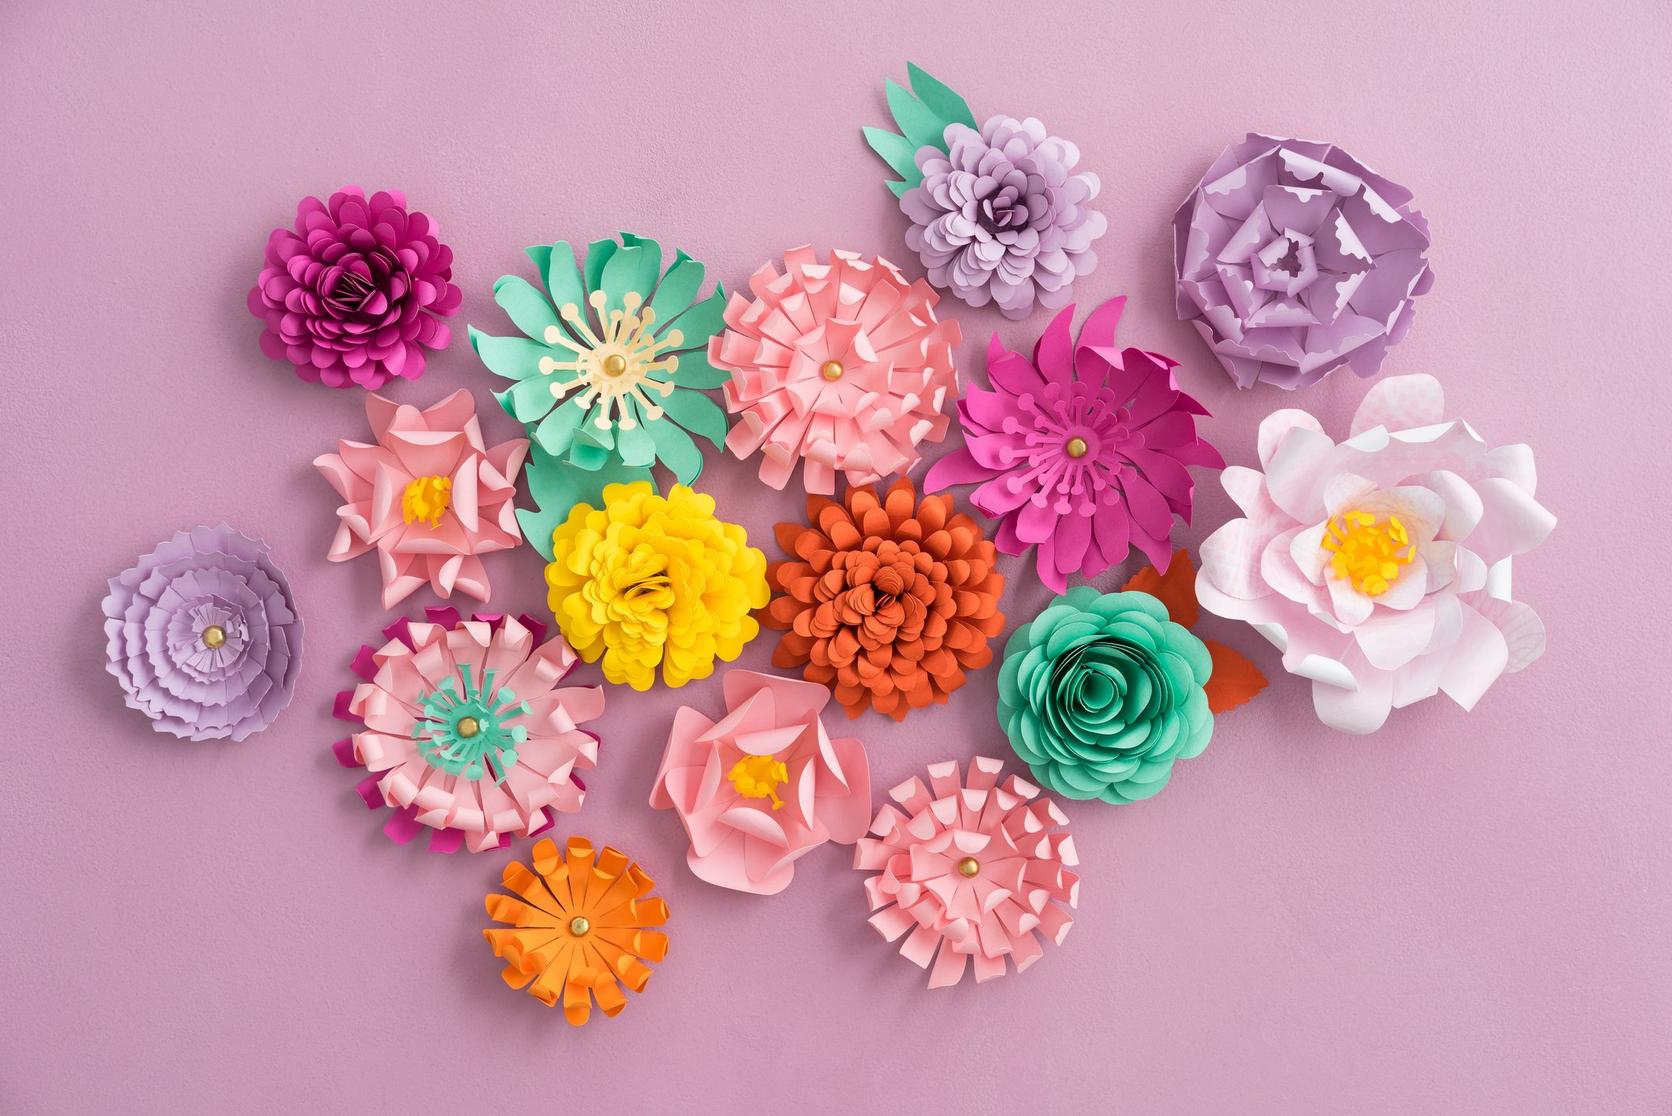 3D Paper Flowers Decorations for Wall, Unique Paper Flower Decor